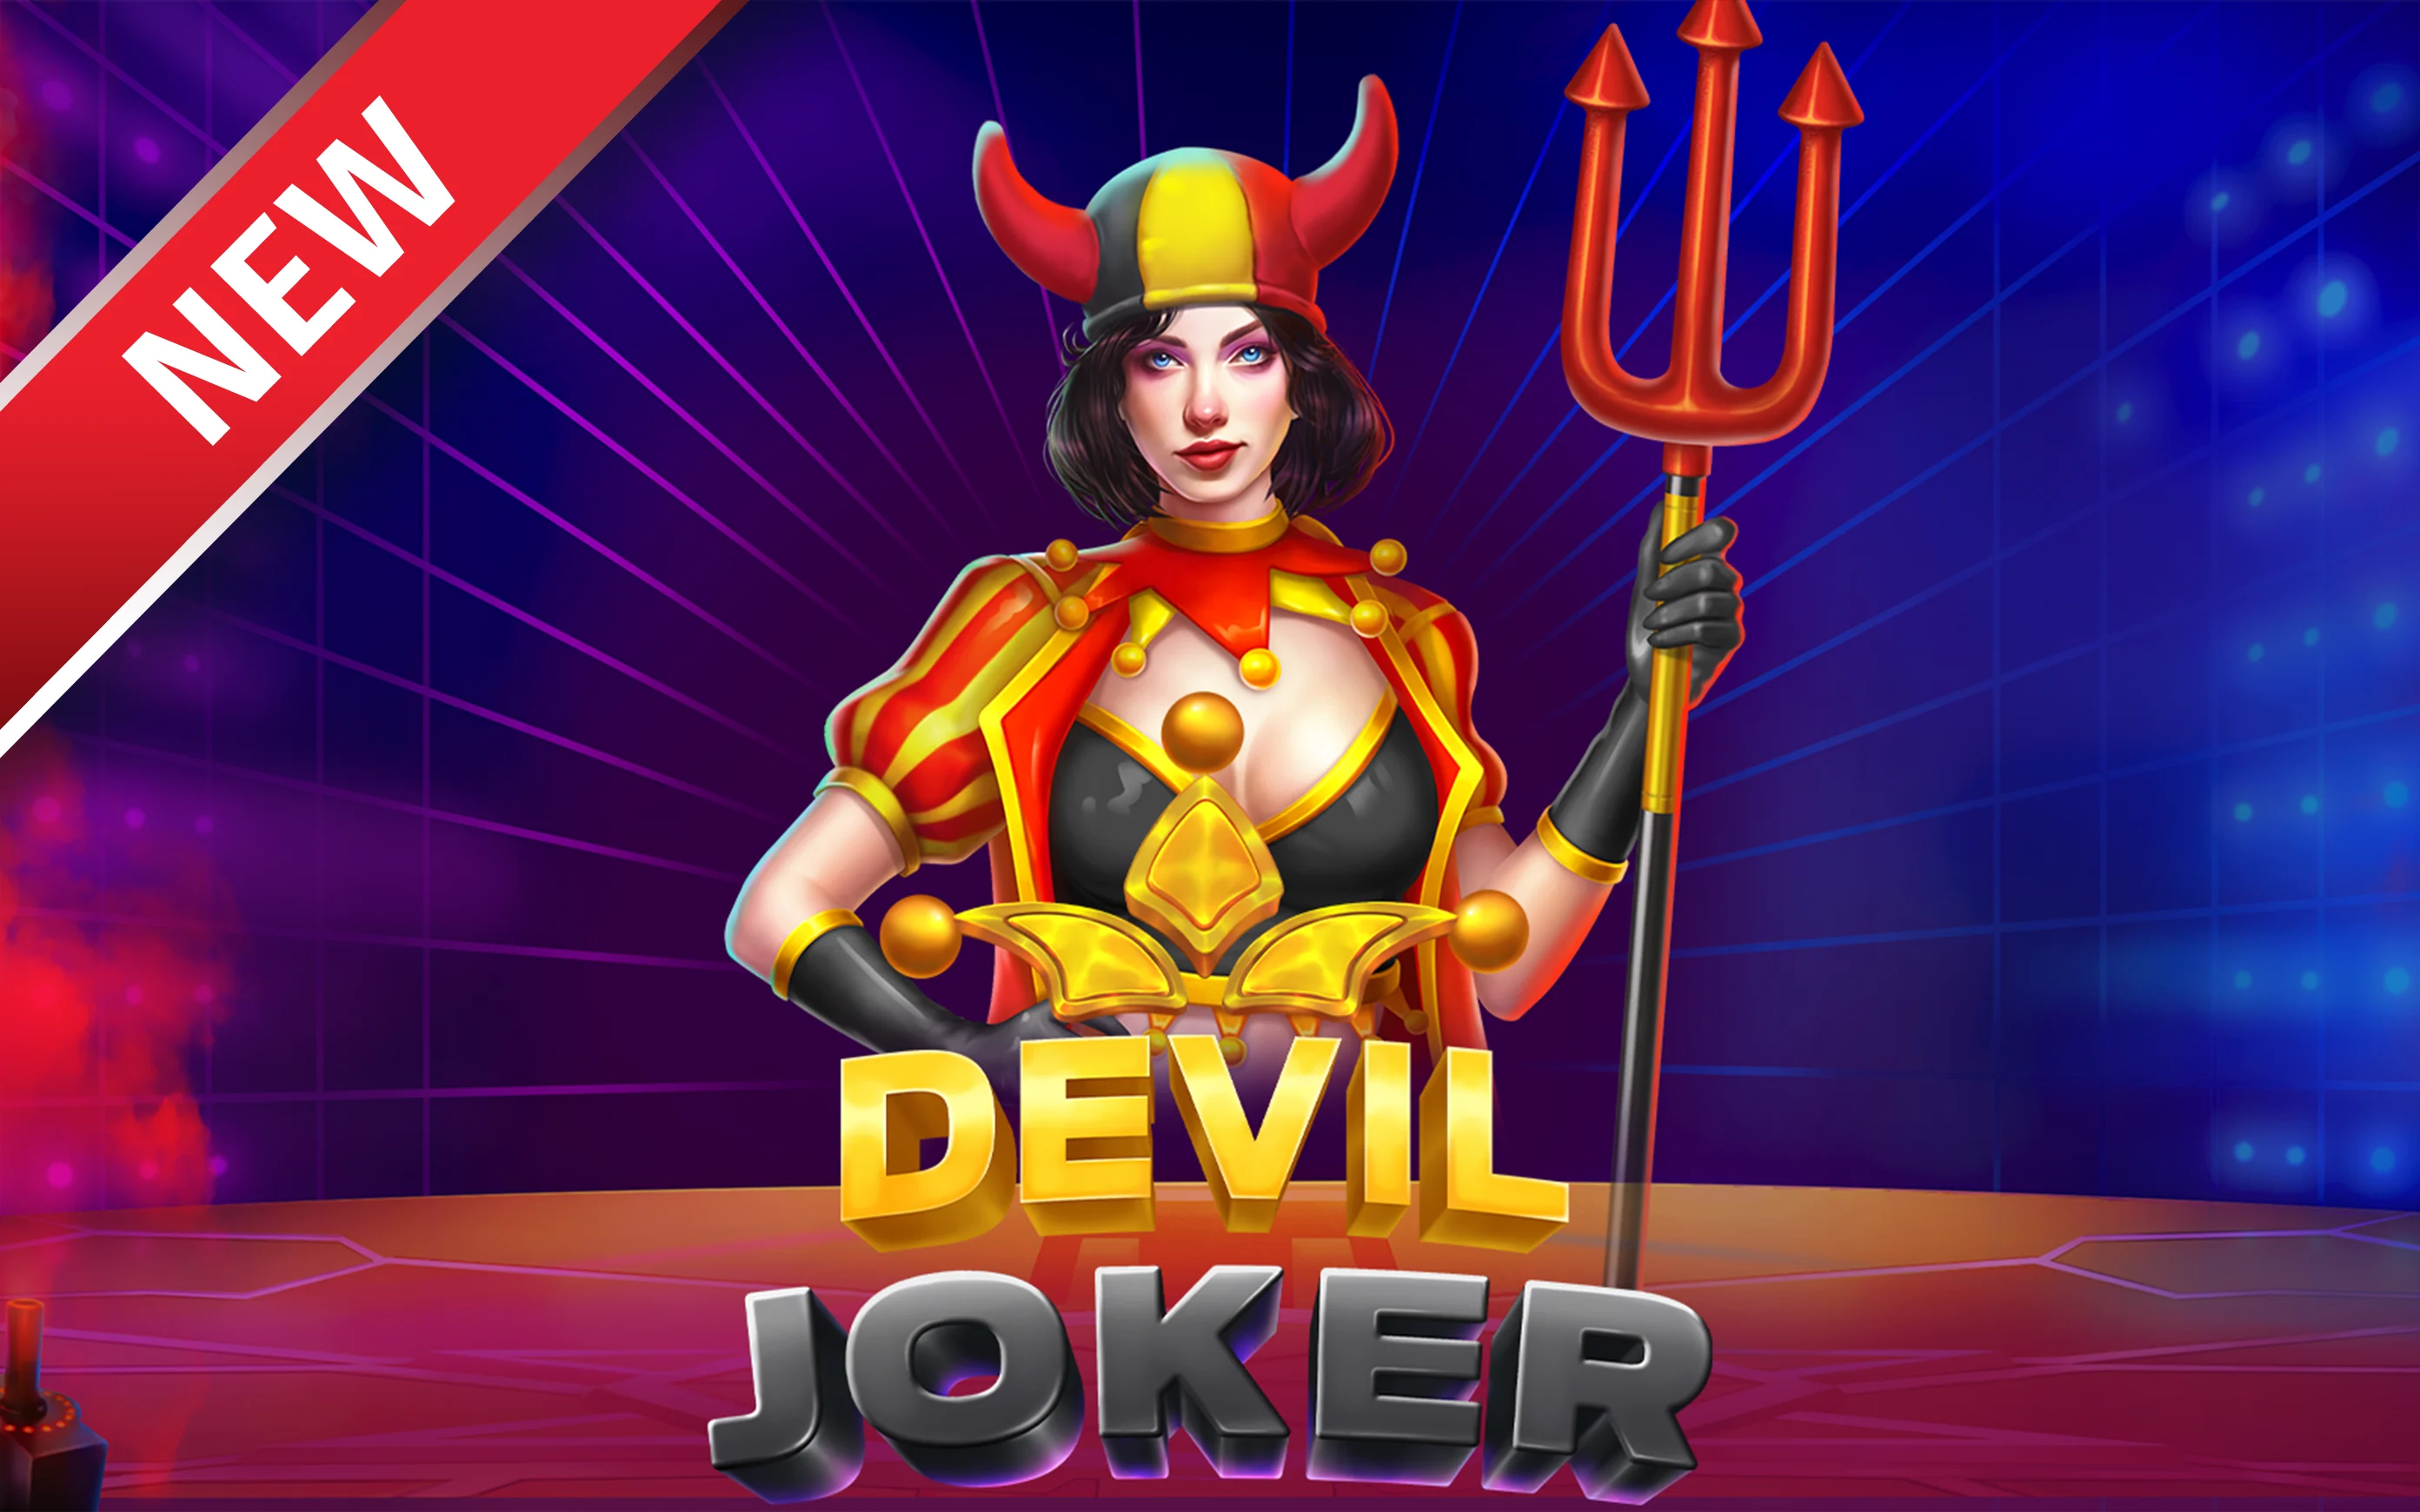 Gioca a Red Devil Joker sul casino online Starcasino.be